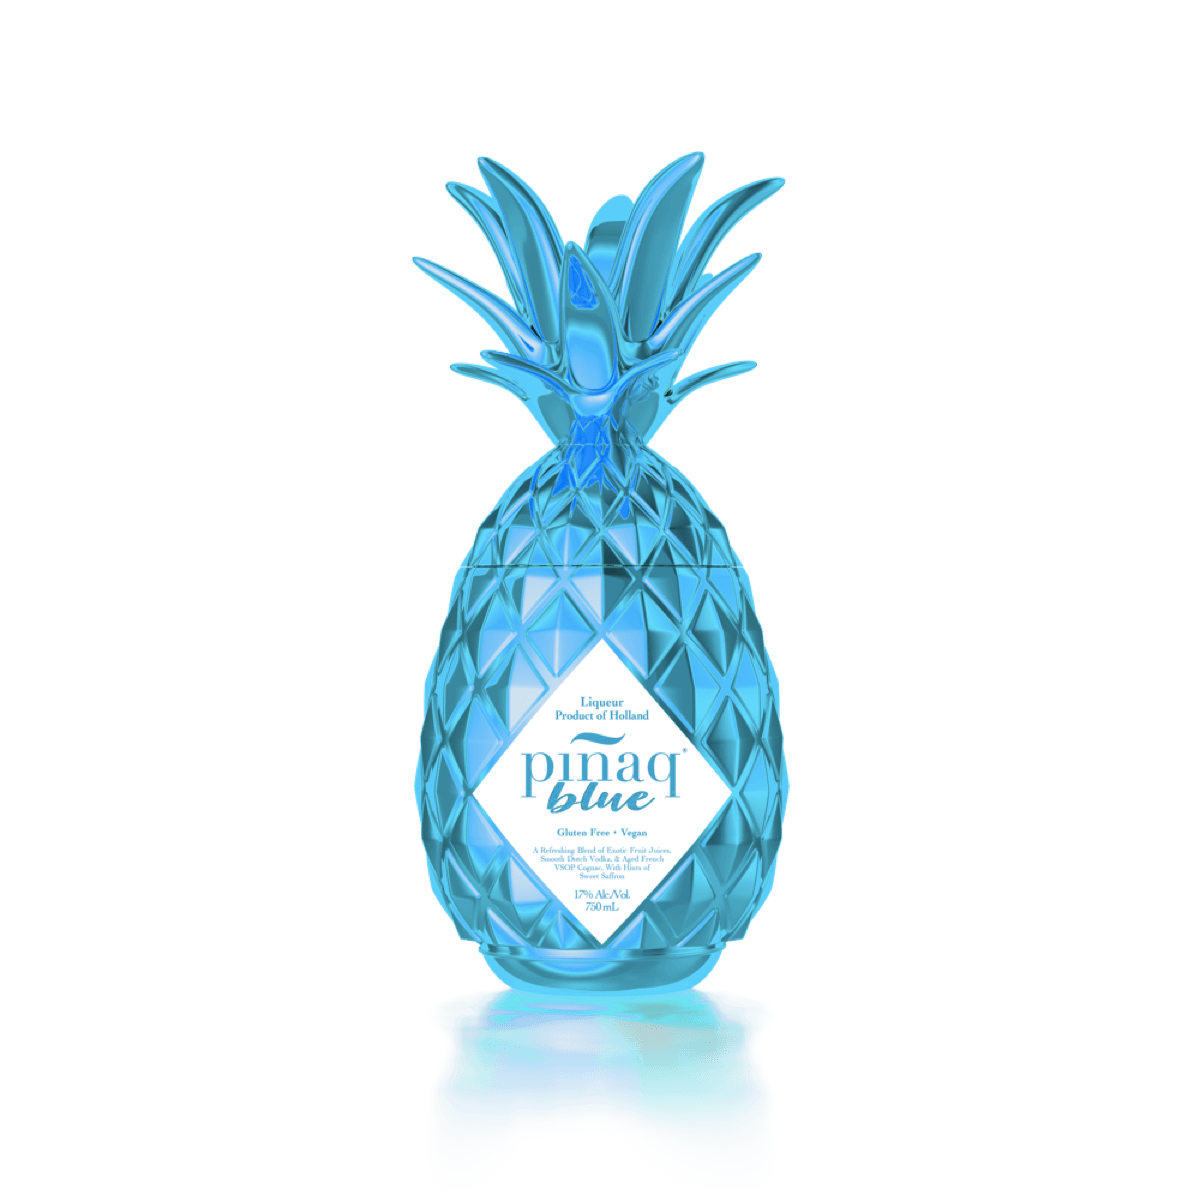 Pinaq Blue Liqueur 750ml